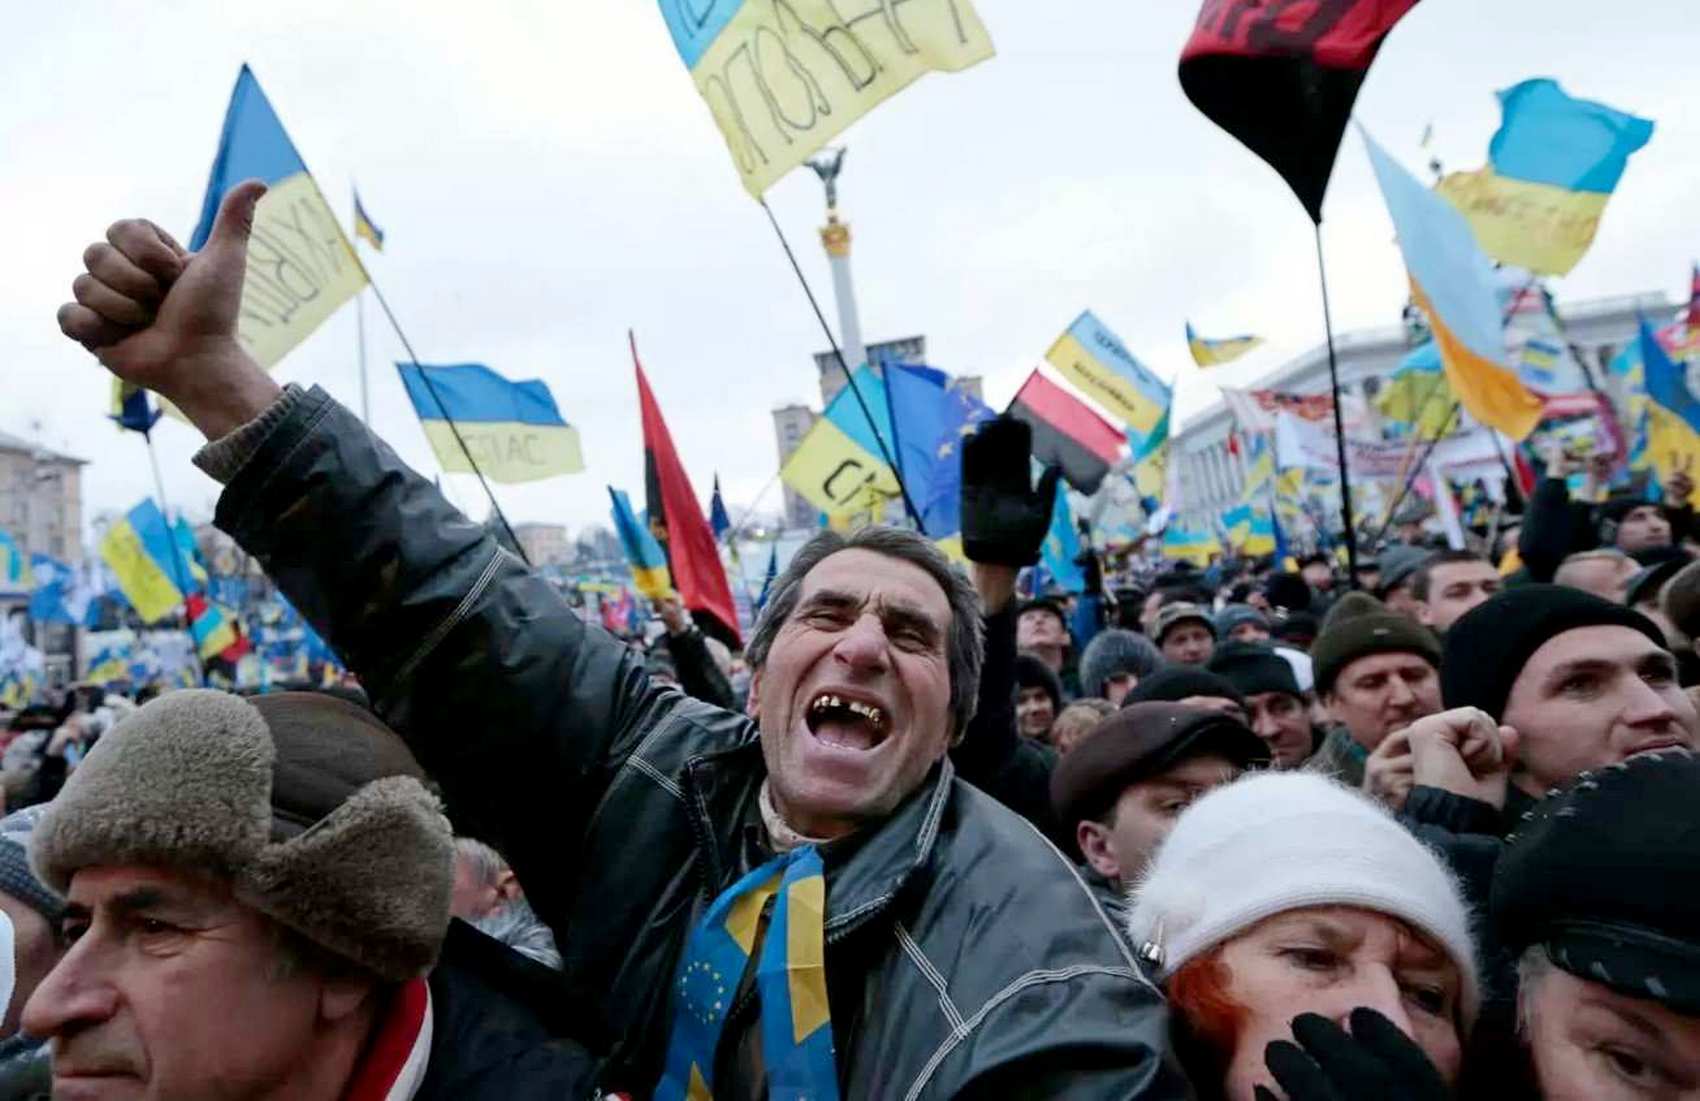 Освобождение от коммуналки, покупка жилья, бесплатное зубопротезирование: участникам Майдана хотят расширить льготы